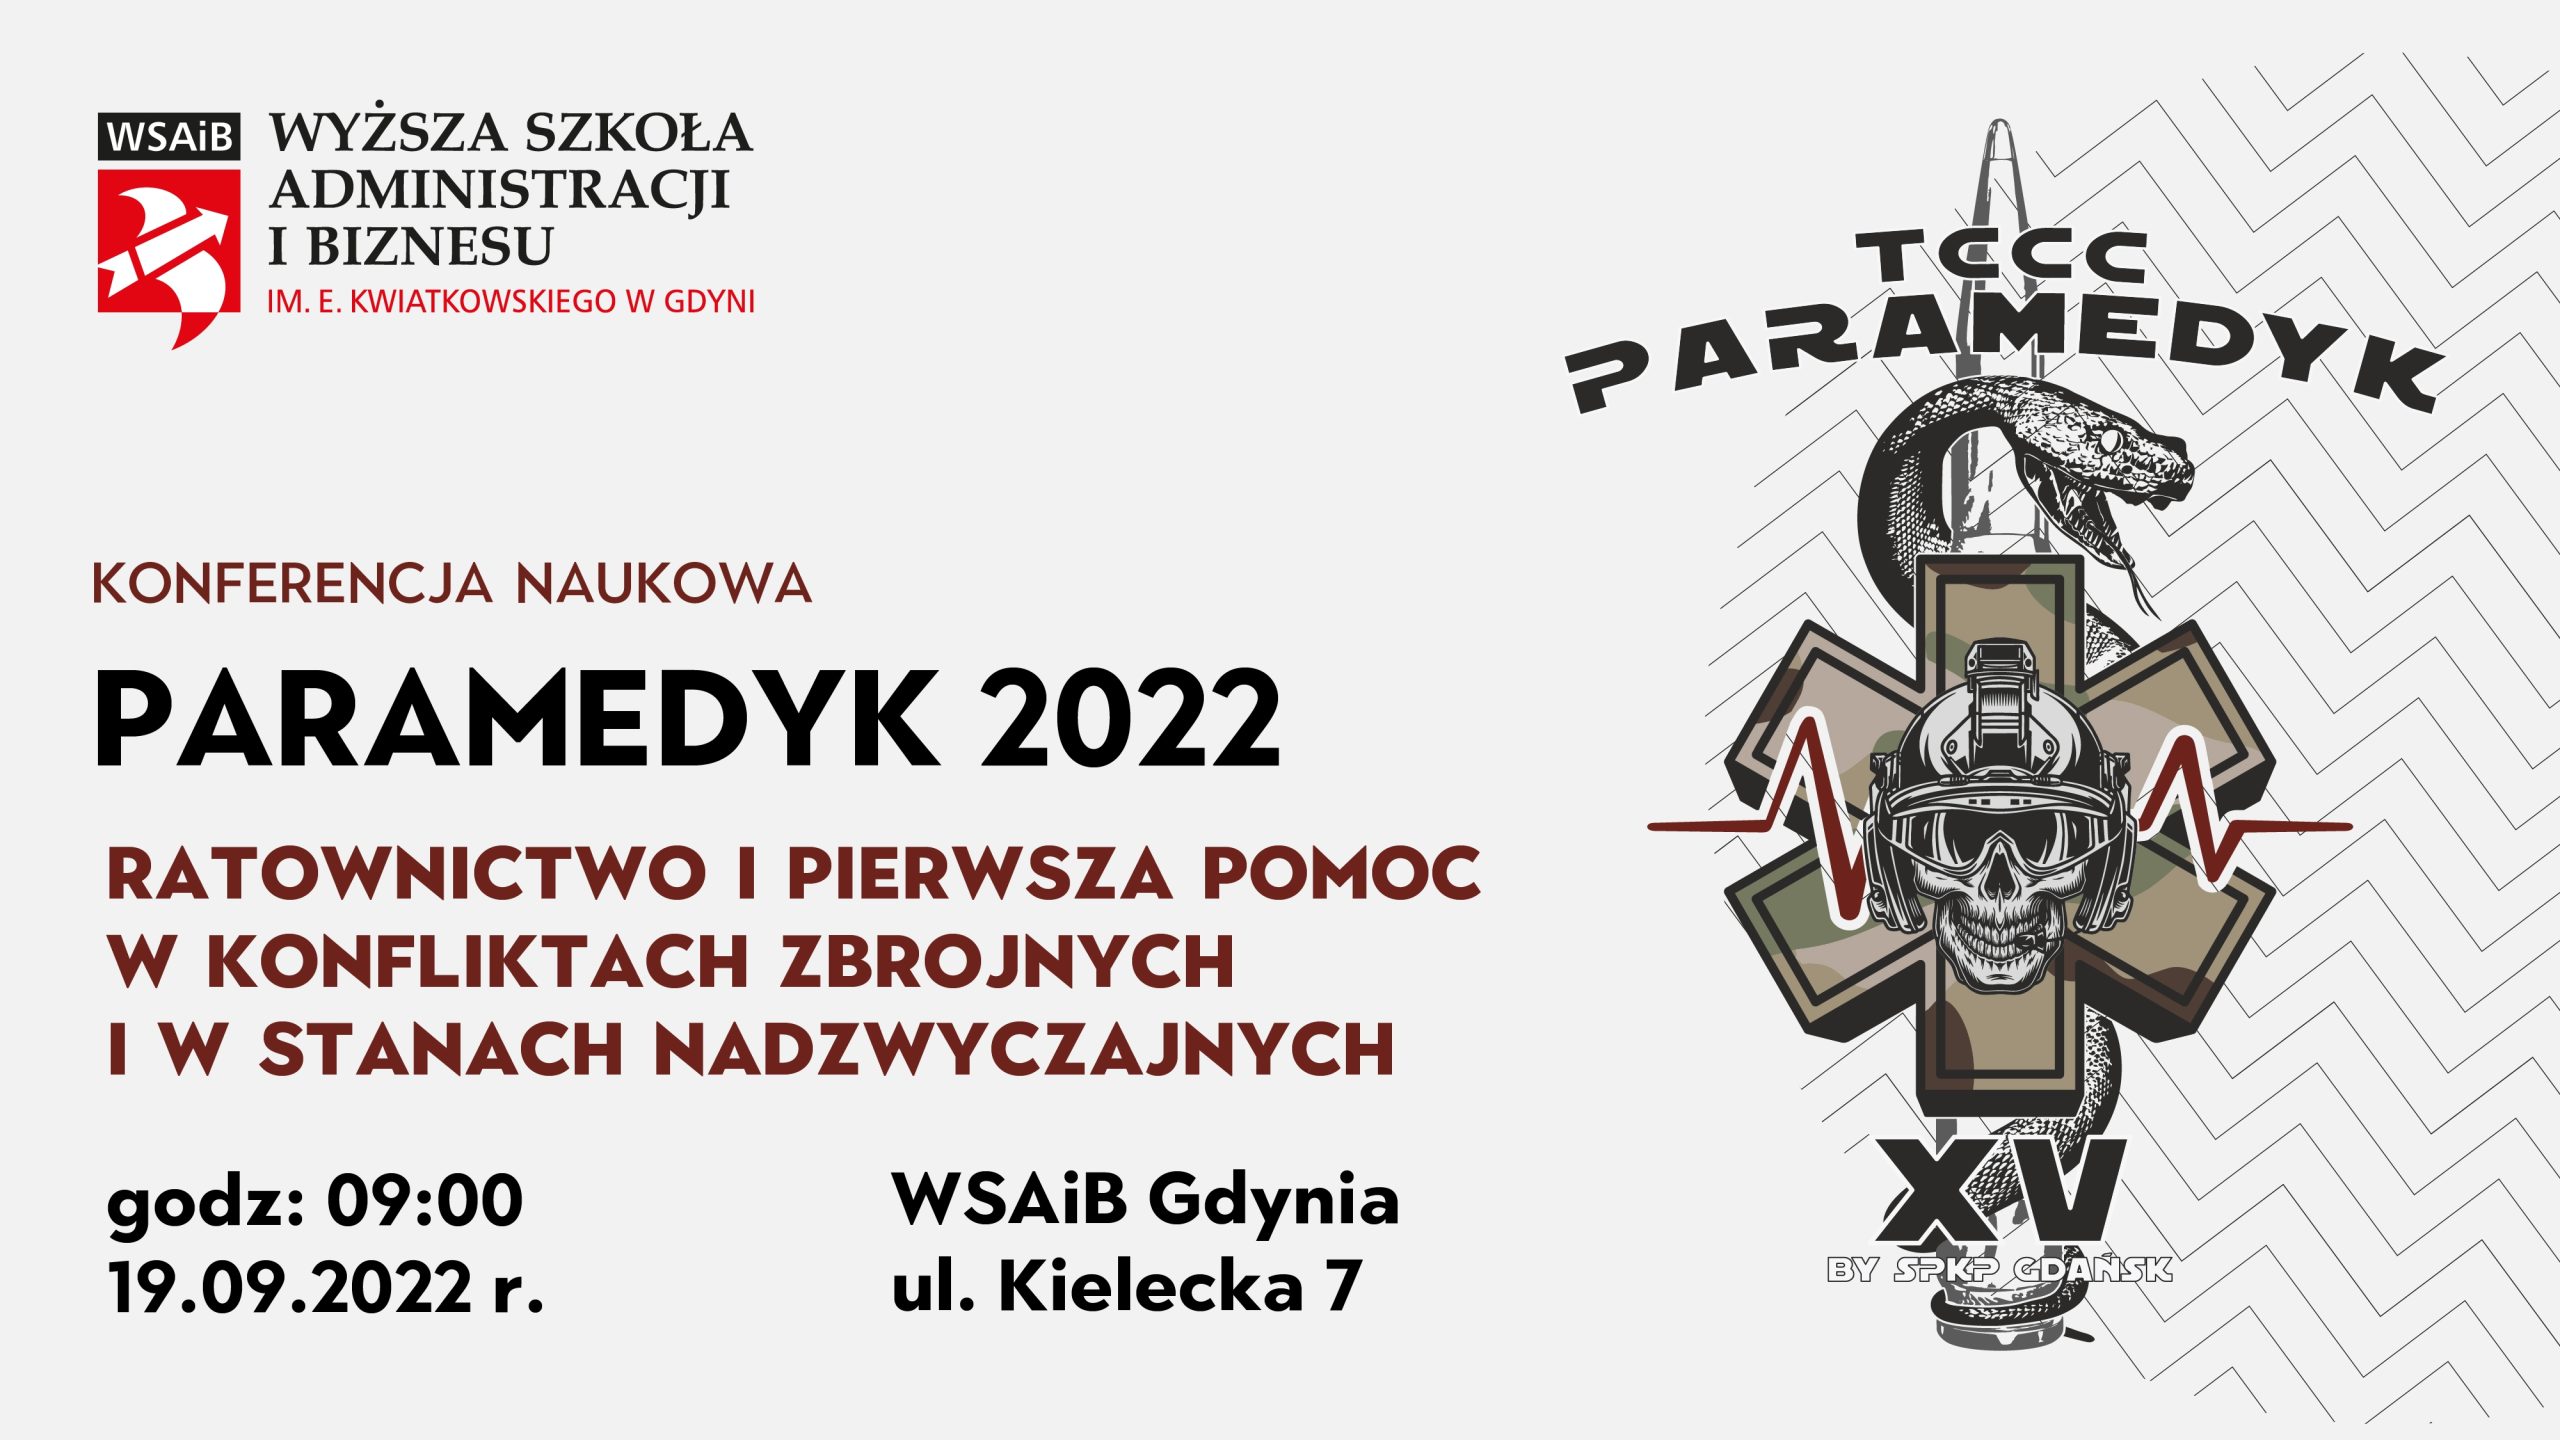 KONFERENCJA NAUKOWA PARAMEDYK 2022